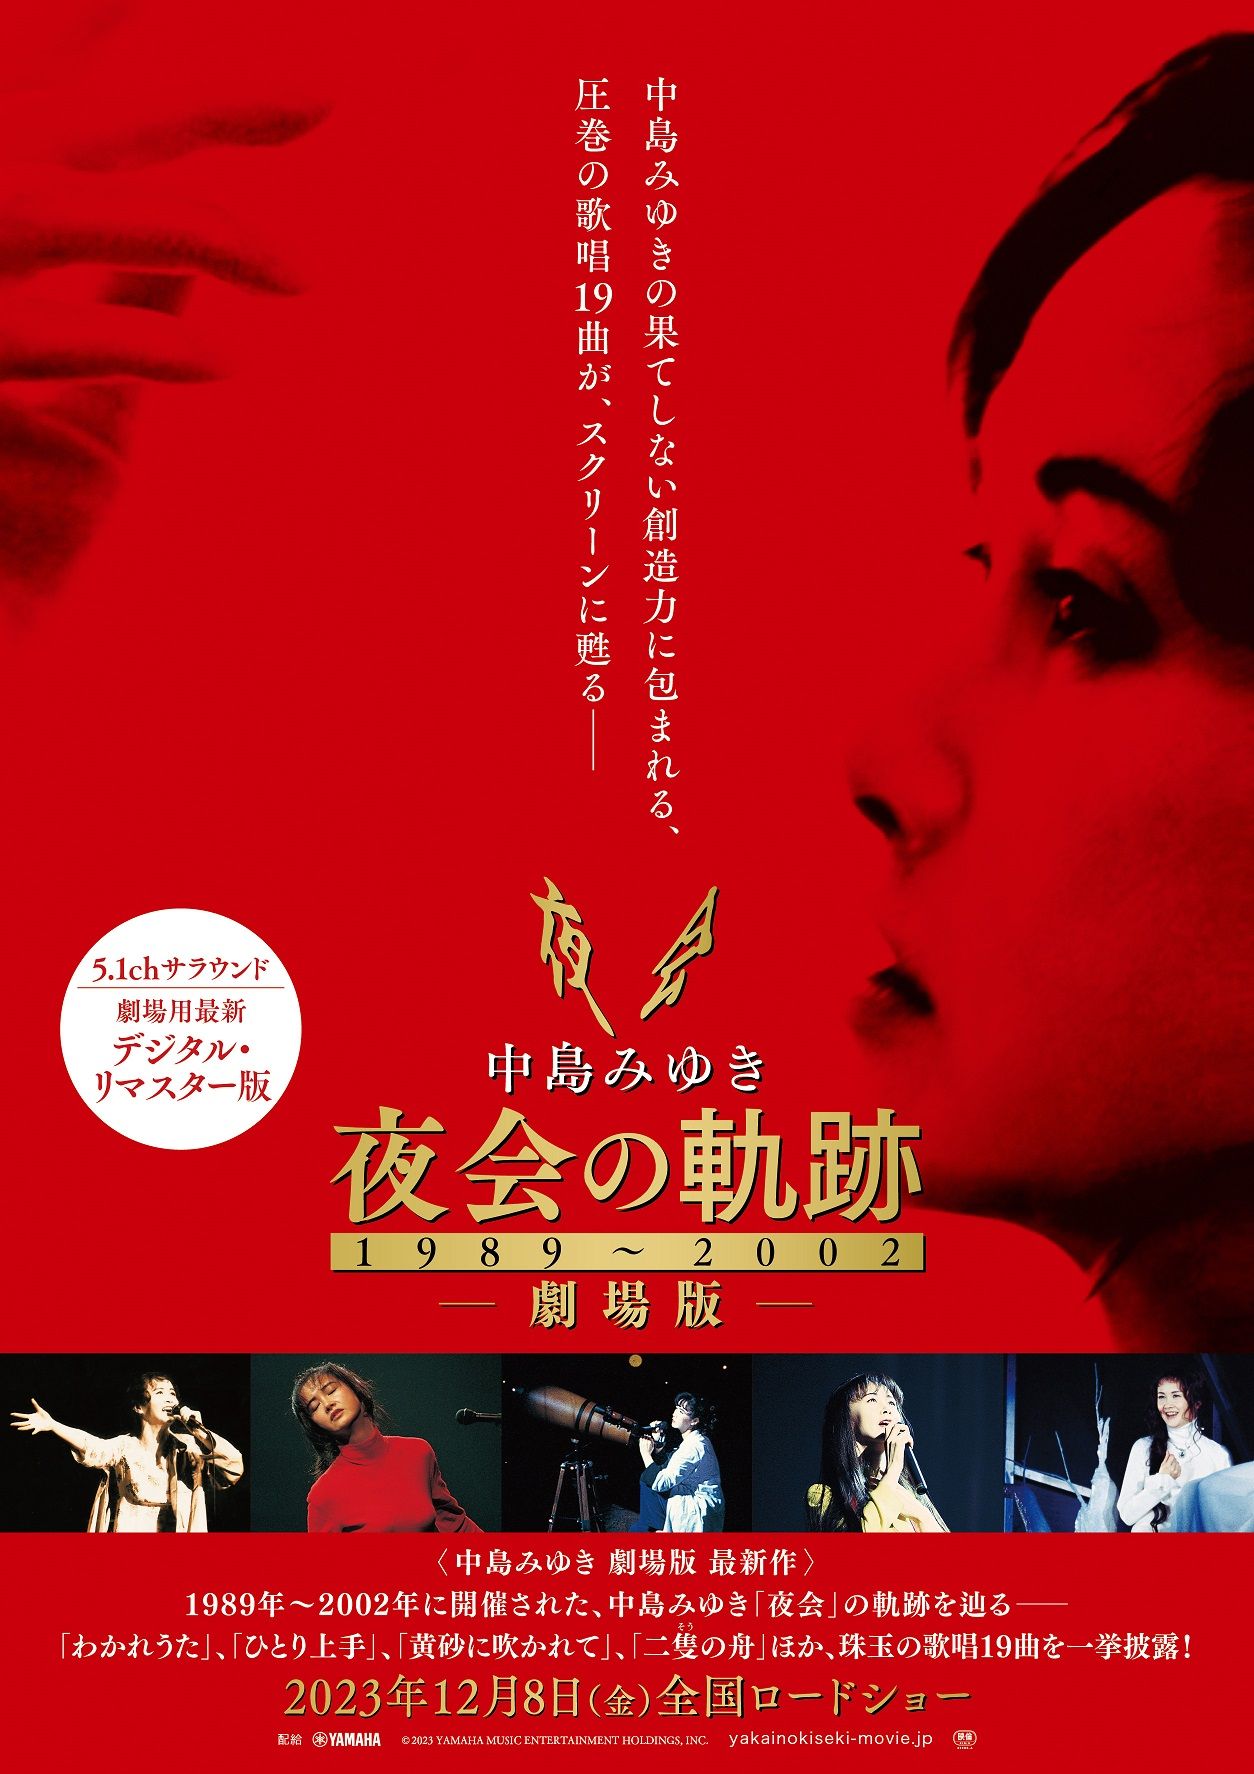 中島みゆき 夜会1989 DVD - タレントグッズ